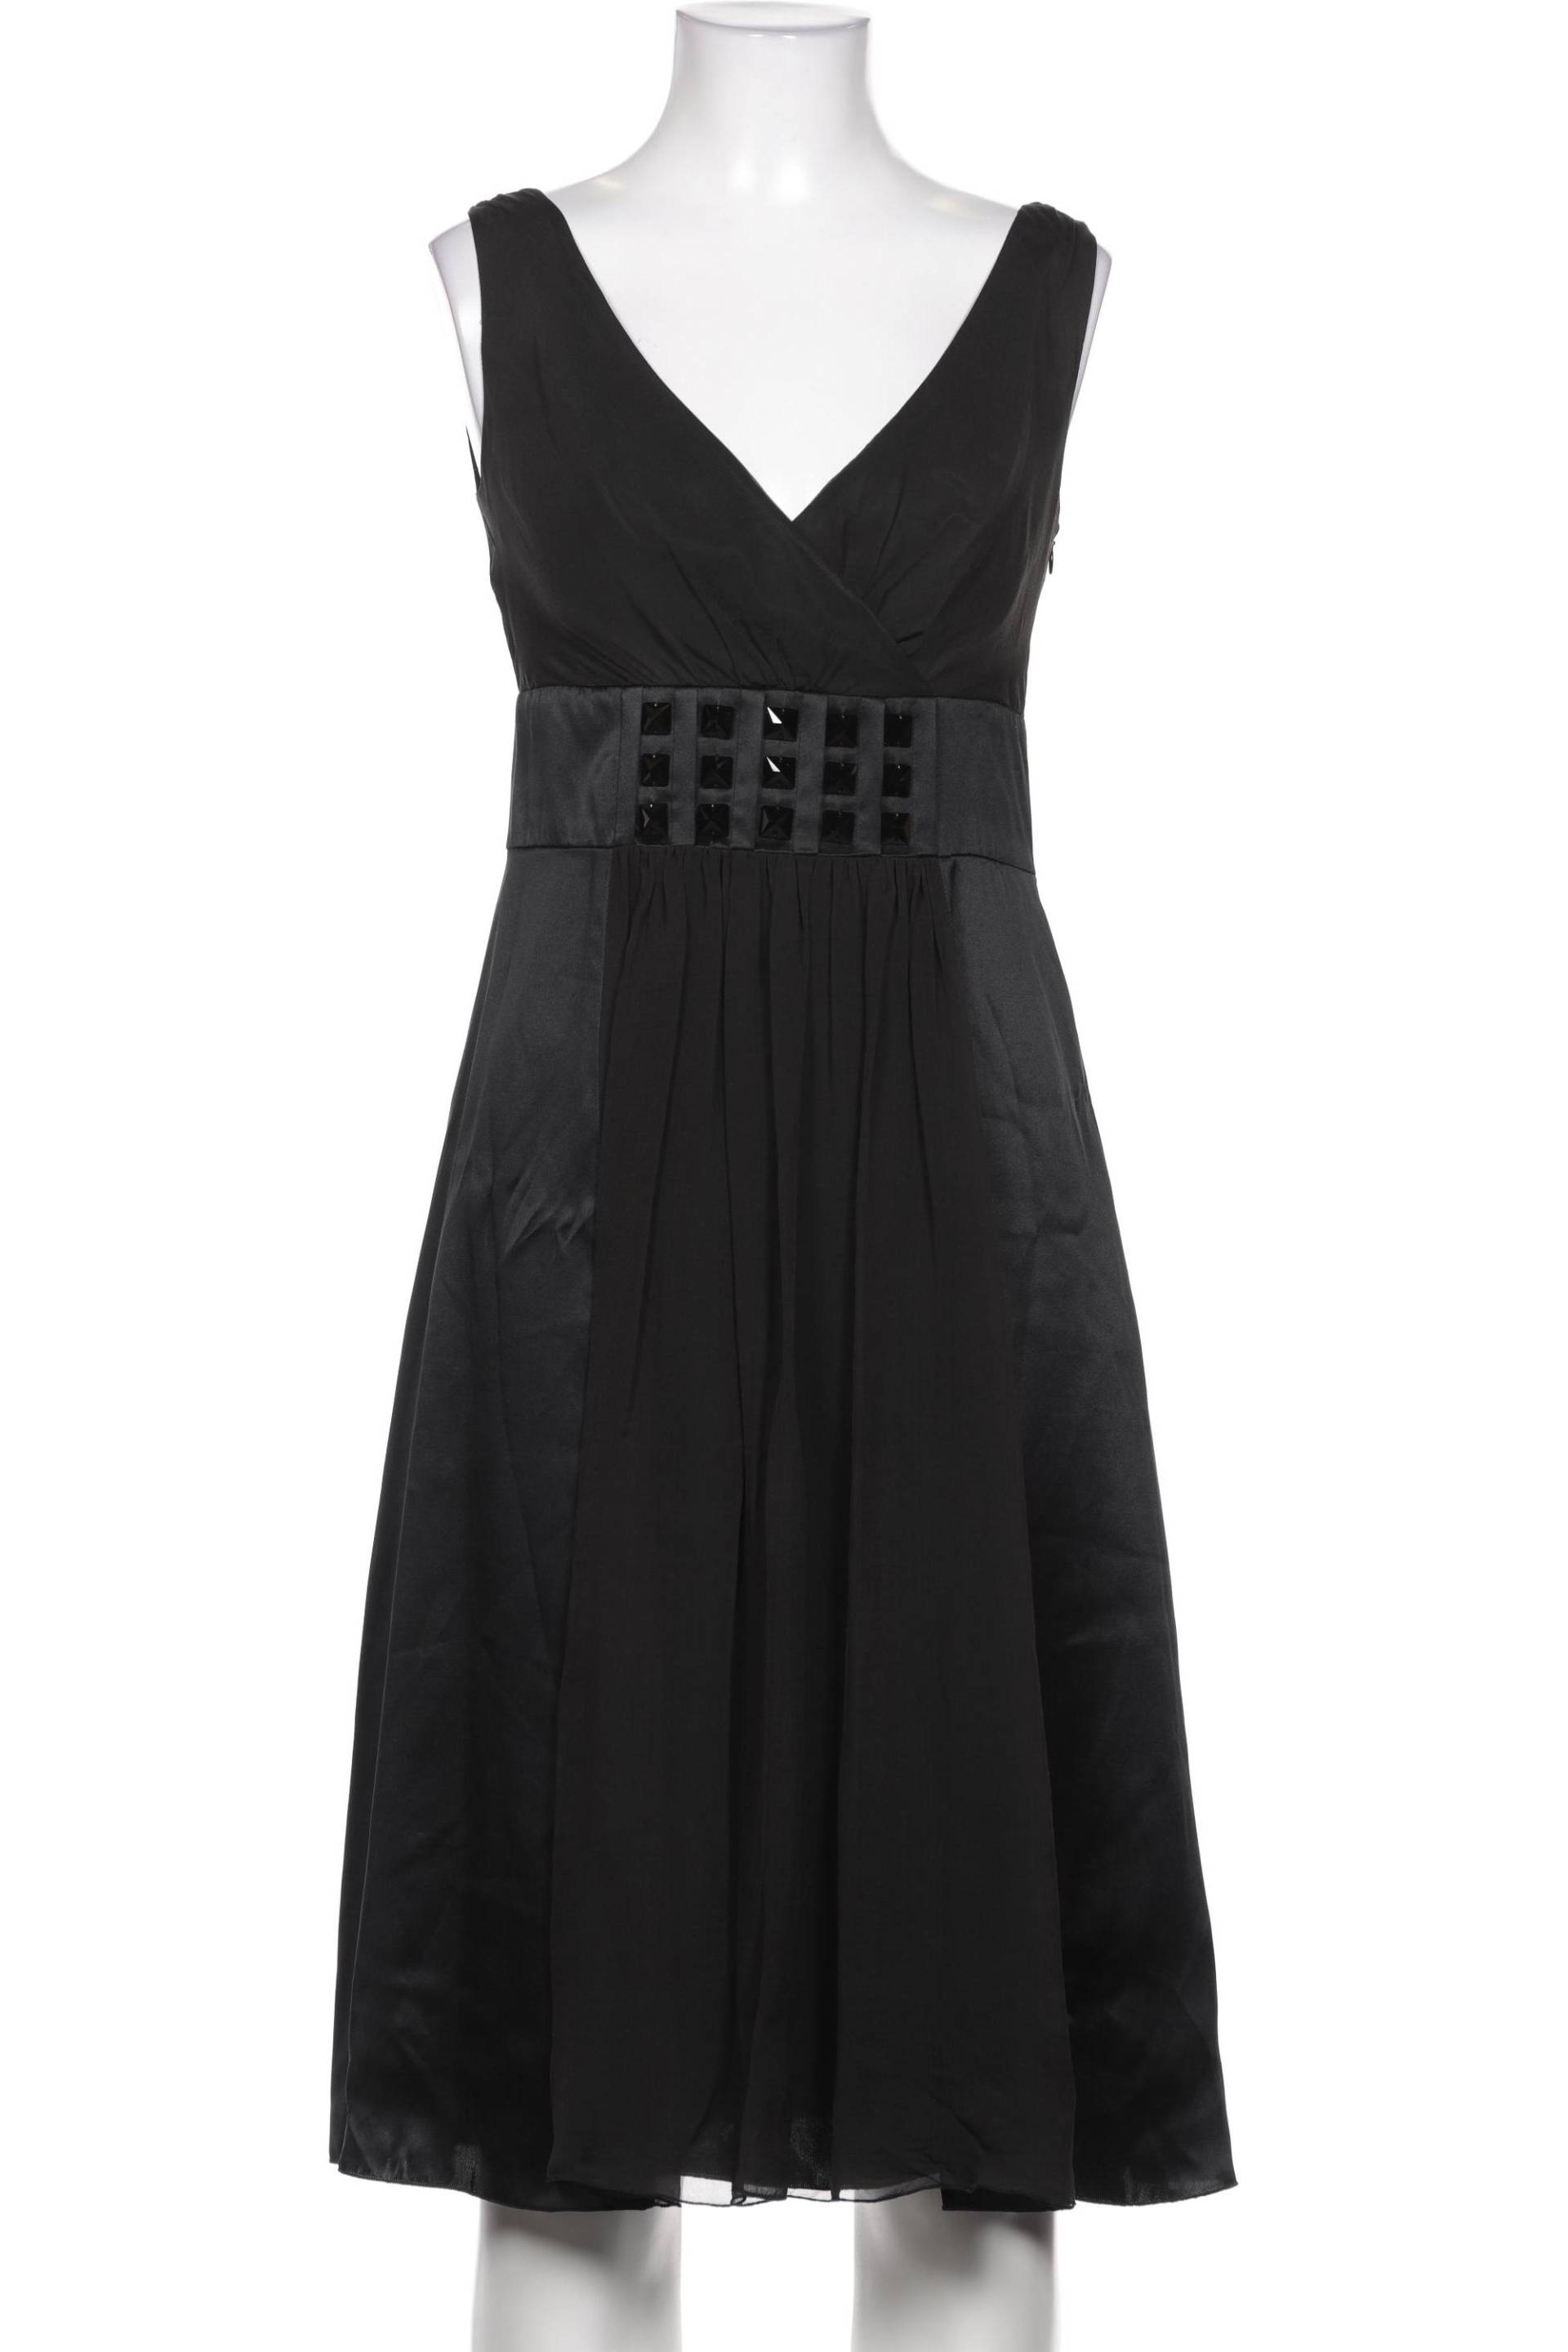 St.Emile Damen Kleid, schwarz von St.Emile